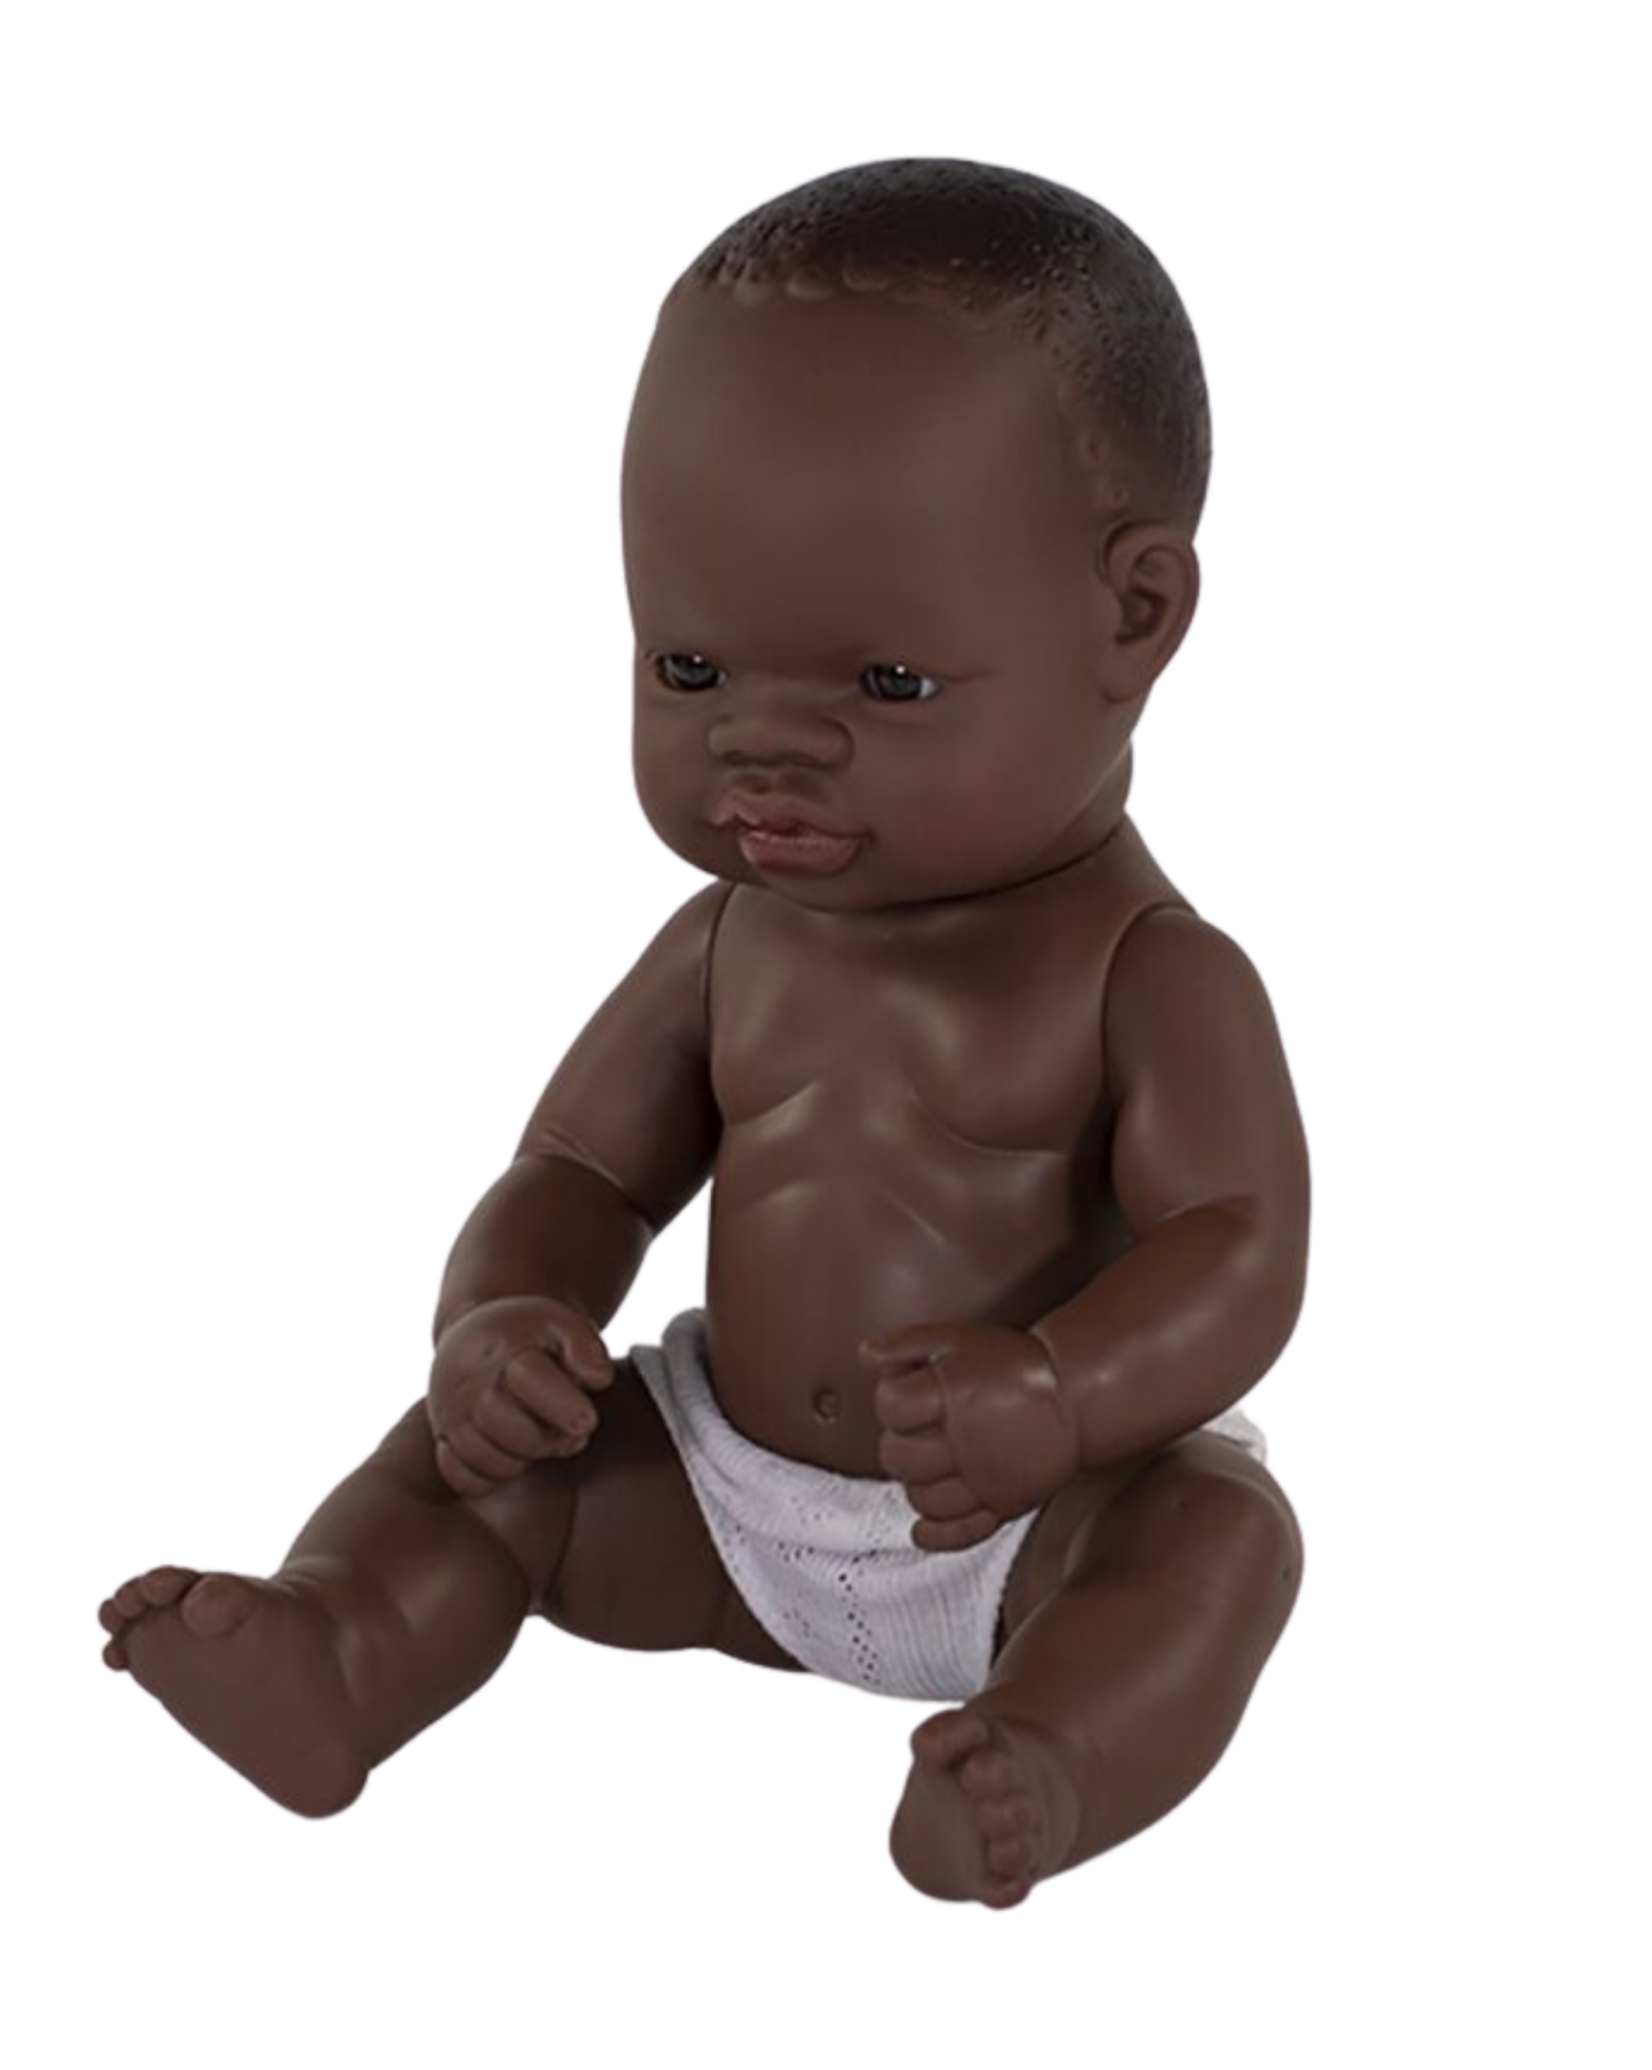 Miniland Newborn Boy Doll African Girl 12 5/8 inch - Ellie & Becks Co.